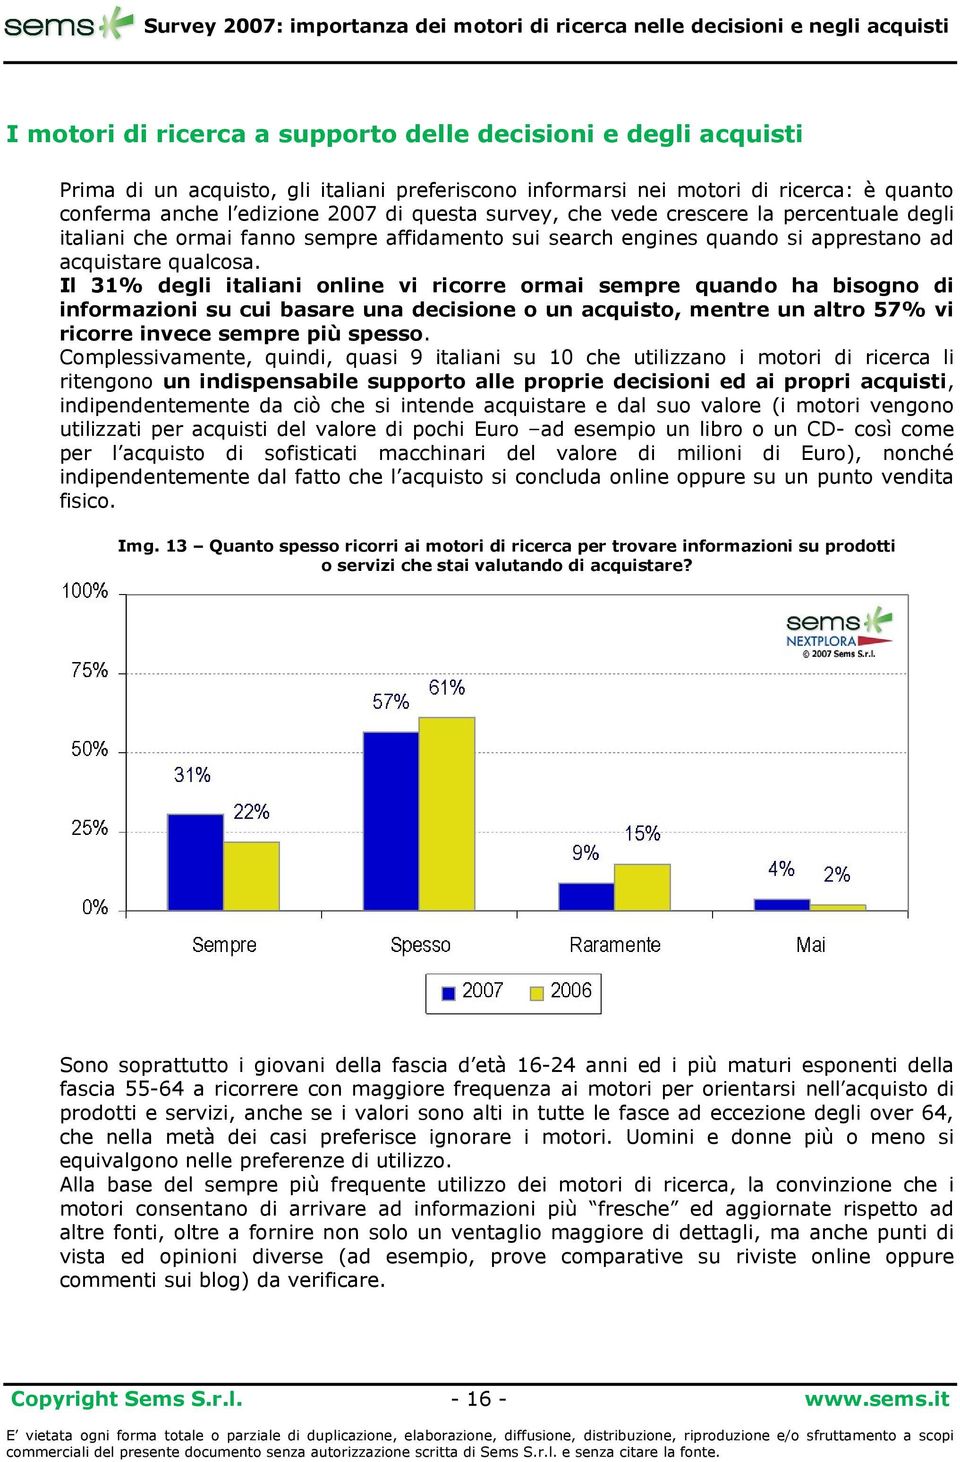 Il 31% degli italiani online vi ricorre ormai sempre quando ha bisogno di informazioni su cui basare una decisione o un acquisto, mentre un altro 57% vi ricorre invece sempre più spesso.